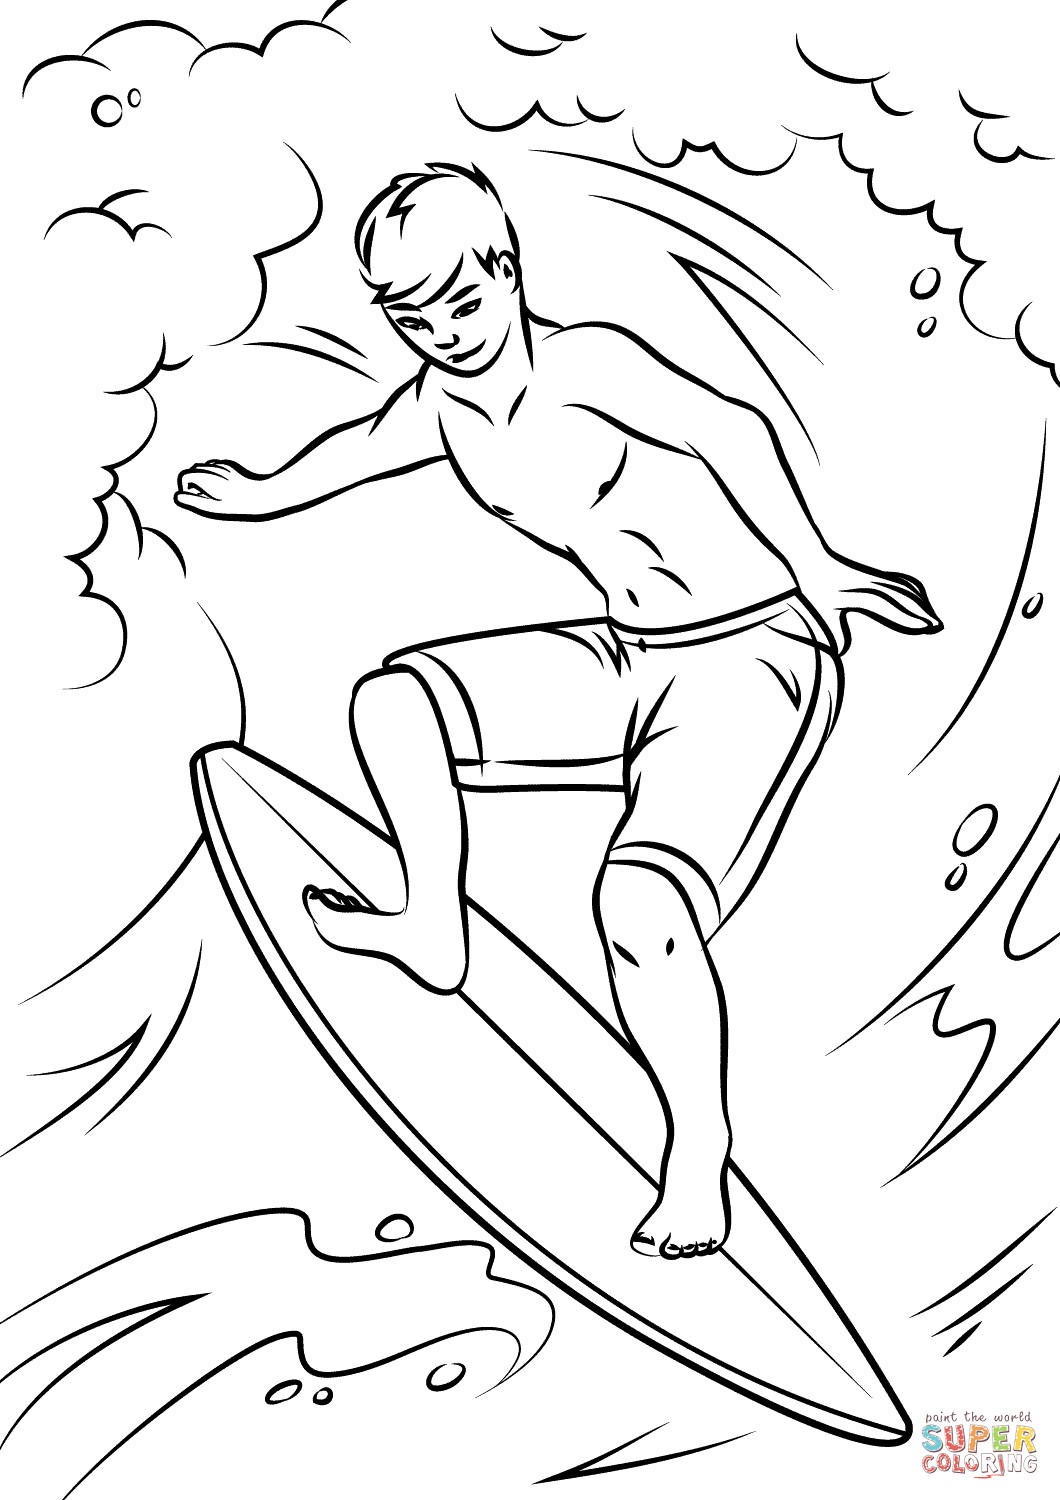 Surfing Coloring Pages
 Dibujo de Surfista chulo para colorear